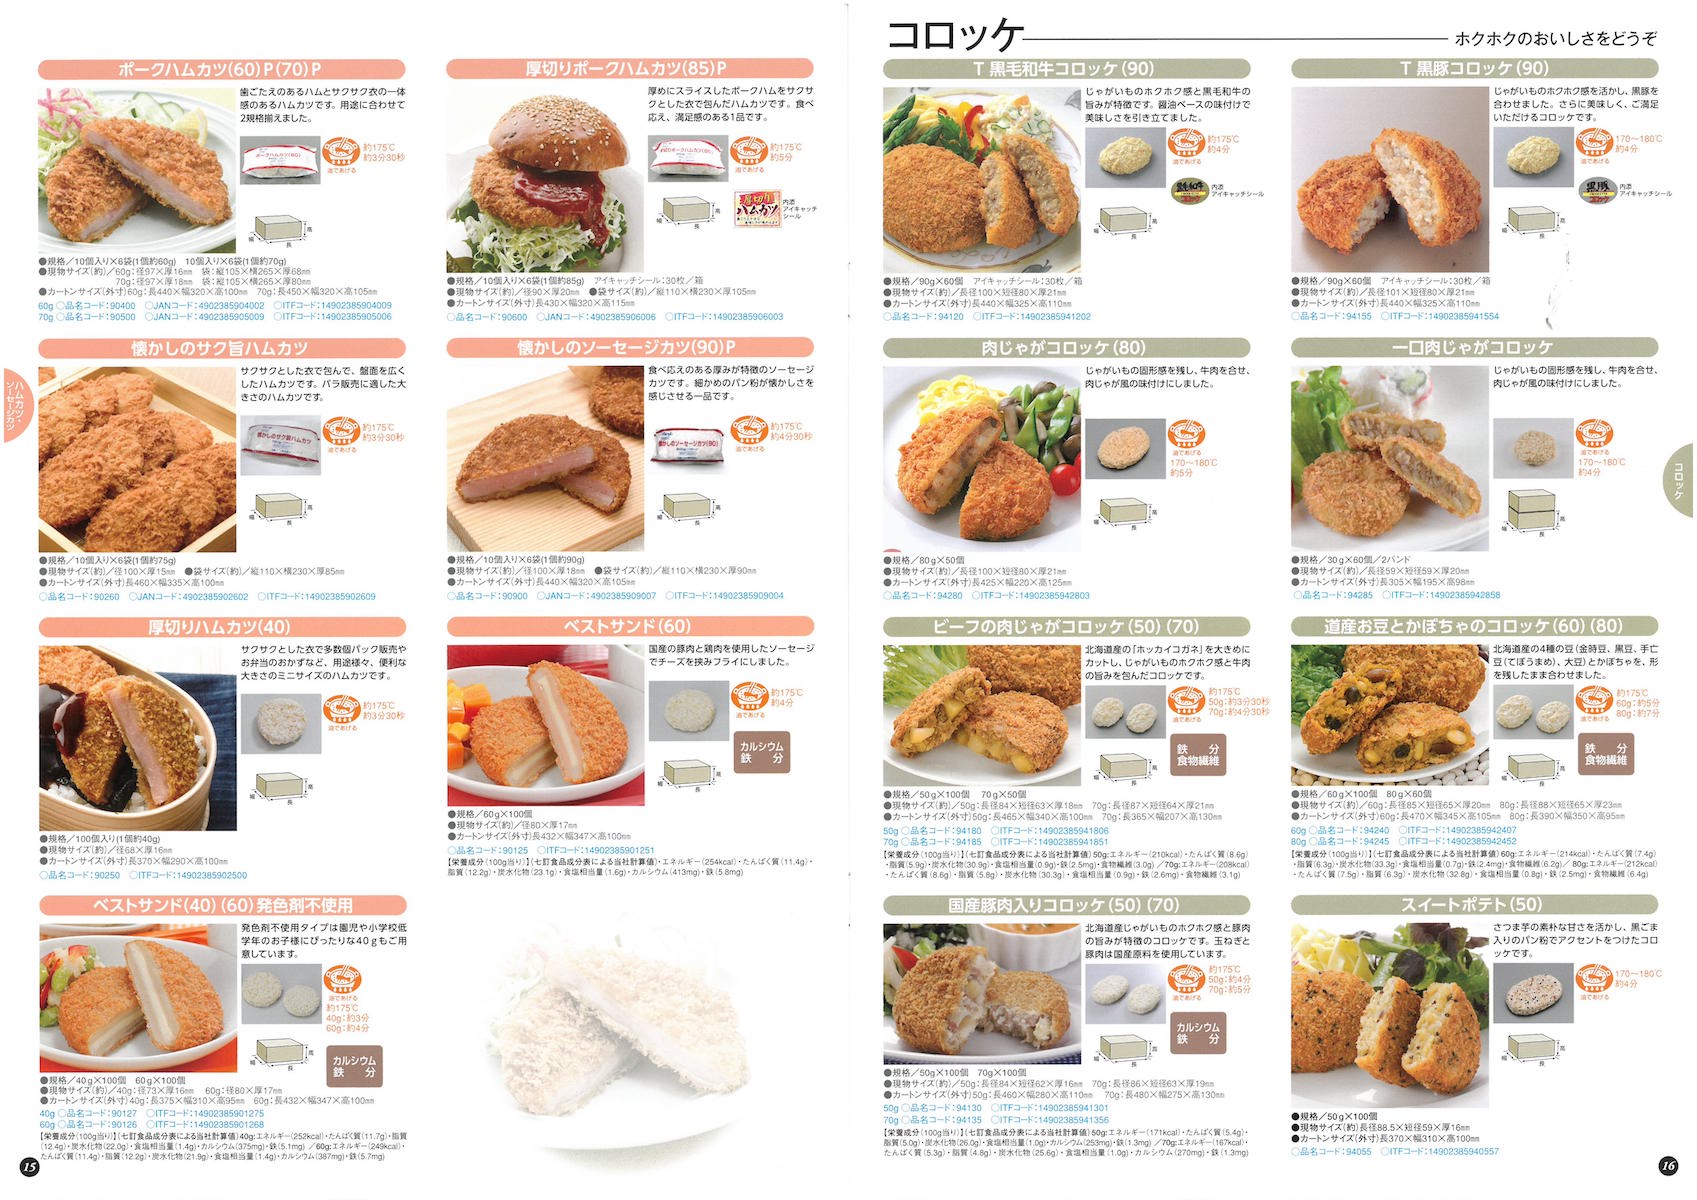 日東ベスト2018業務用食品総合カタログ